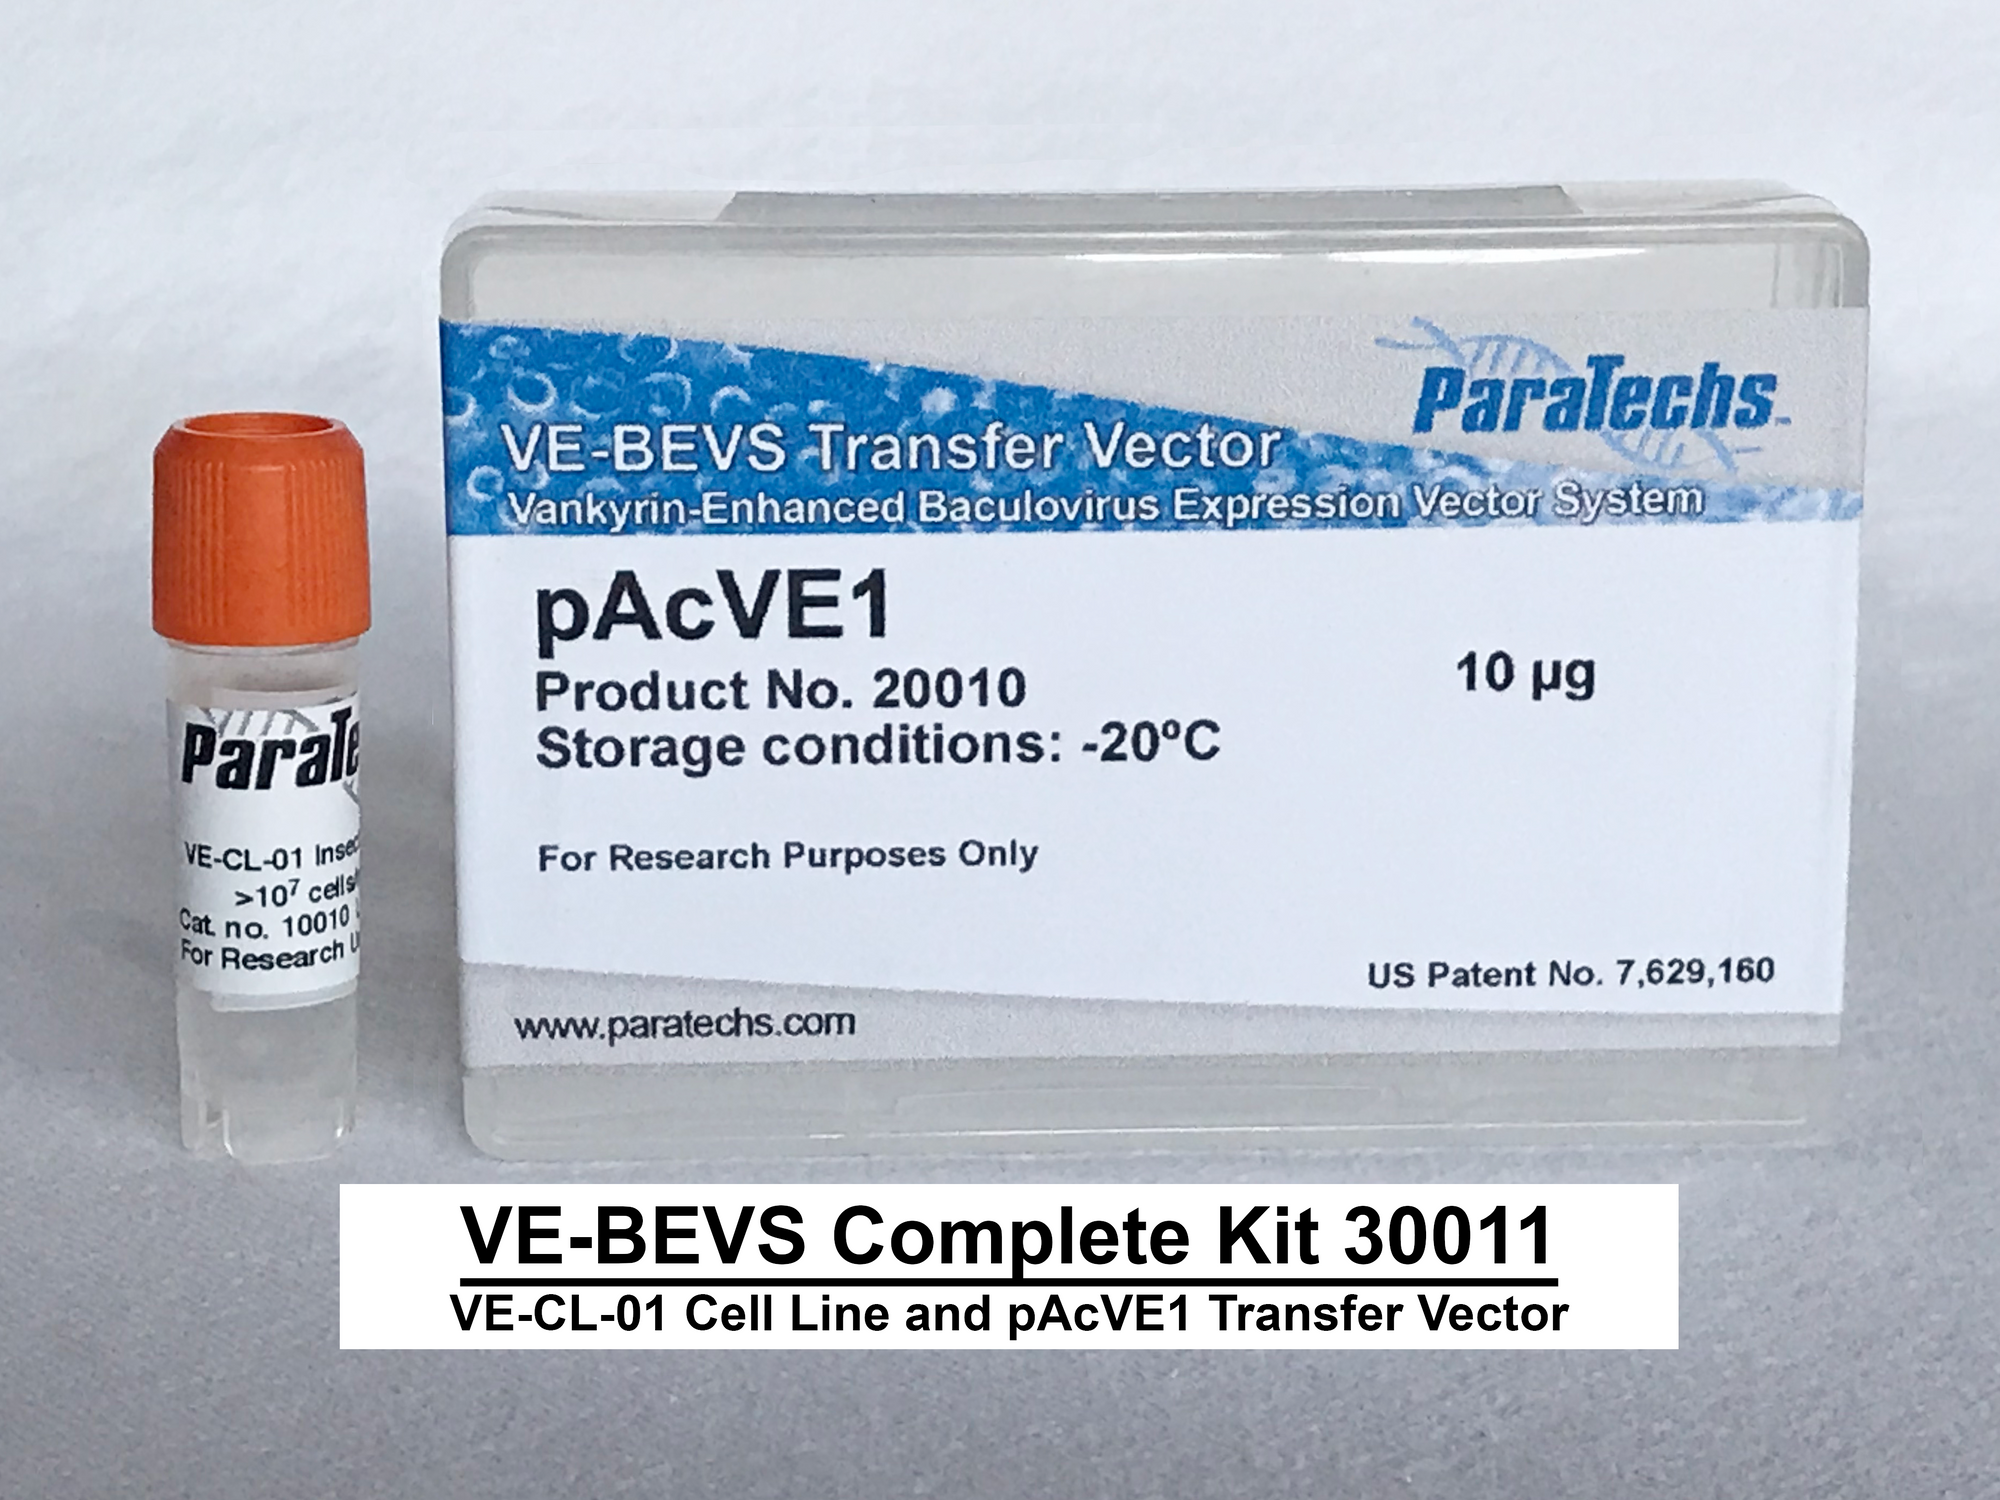 VE-BEVS Complete Kit 30011 (VE-CL-01, pAcVE1)